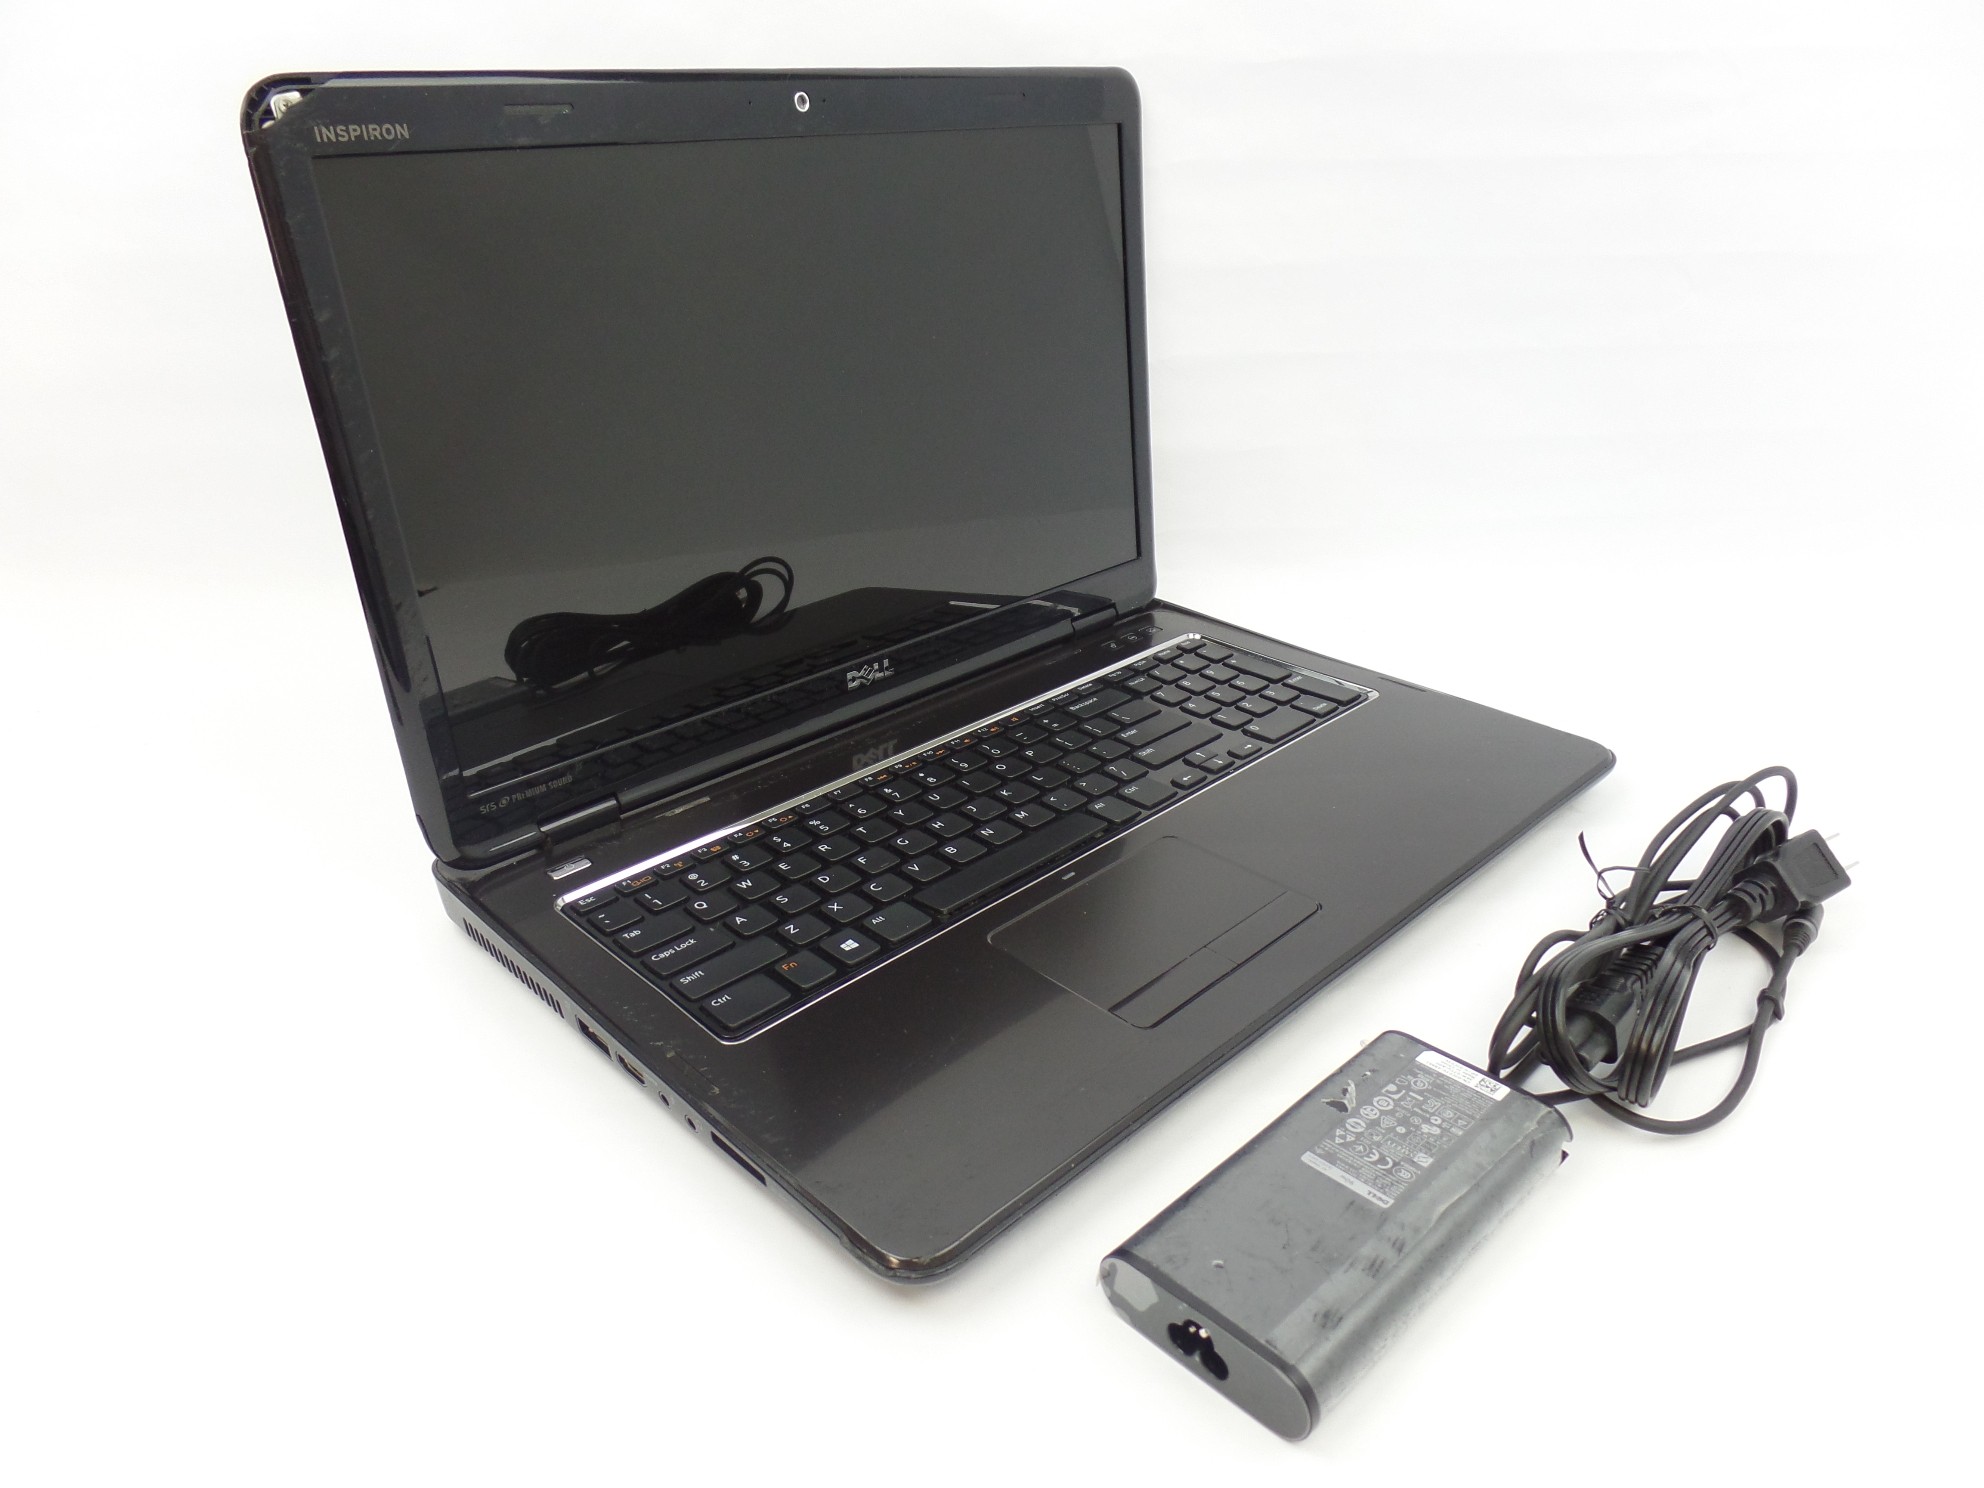 Dell Inspiron 17R N7110 17.3" HD+ i5-2410U 2.3GHz 4GB 500GB W7P Laptop U1